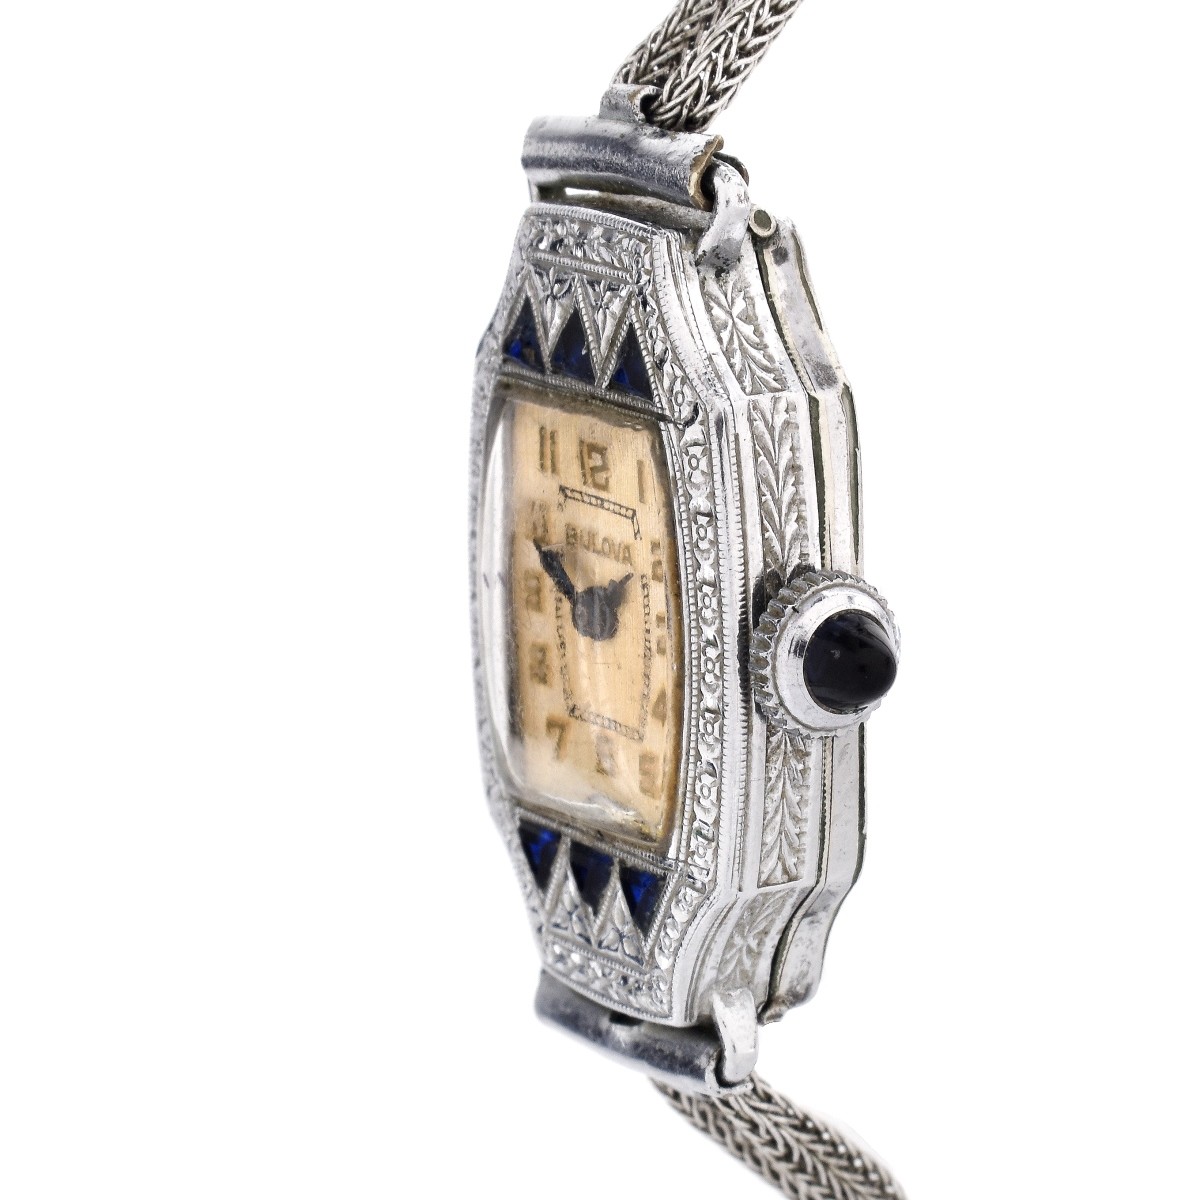 Lady's Bulova Bracelet Watch - Image 3 of 6